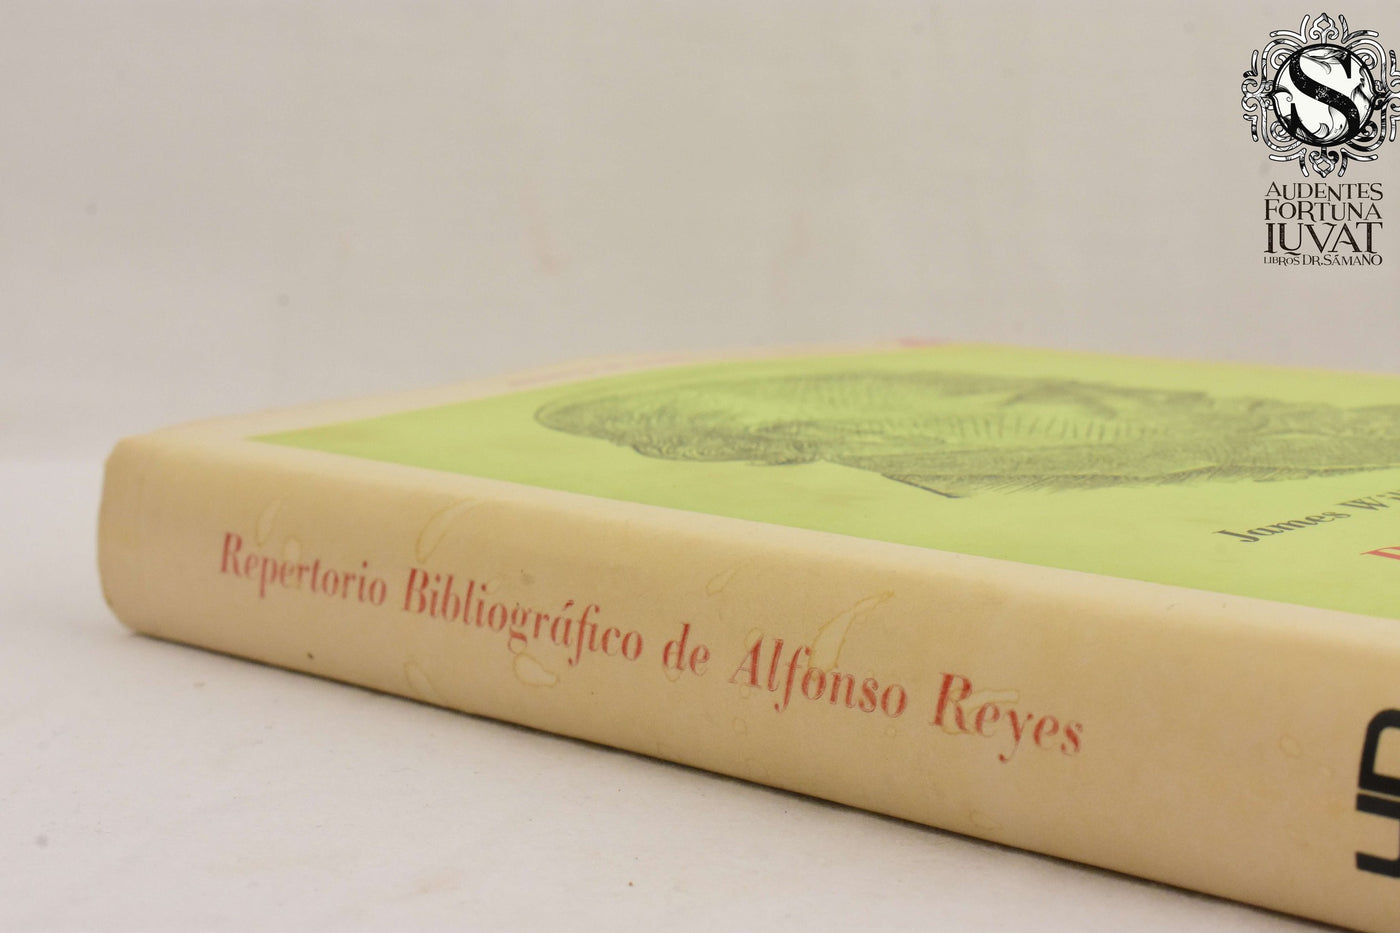 Repertorio Bibliográfico de Alfonso Reyes - JAMES WILLIS ROBB